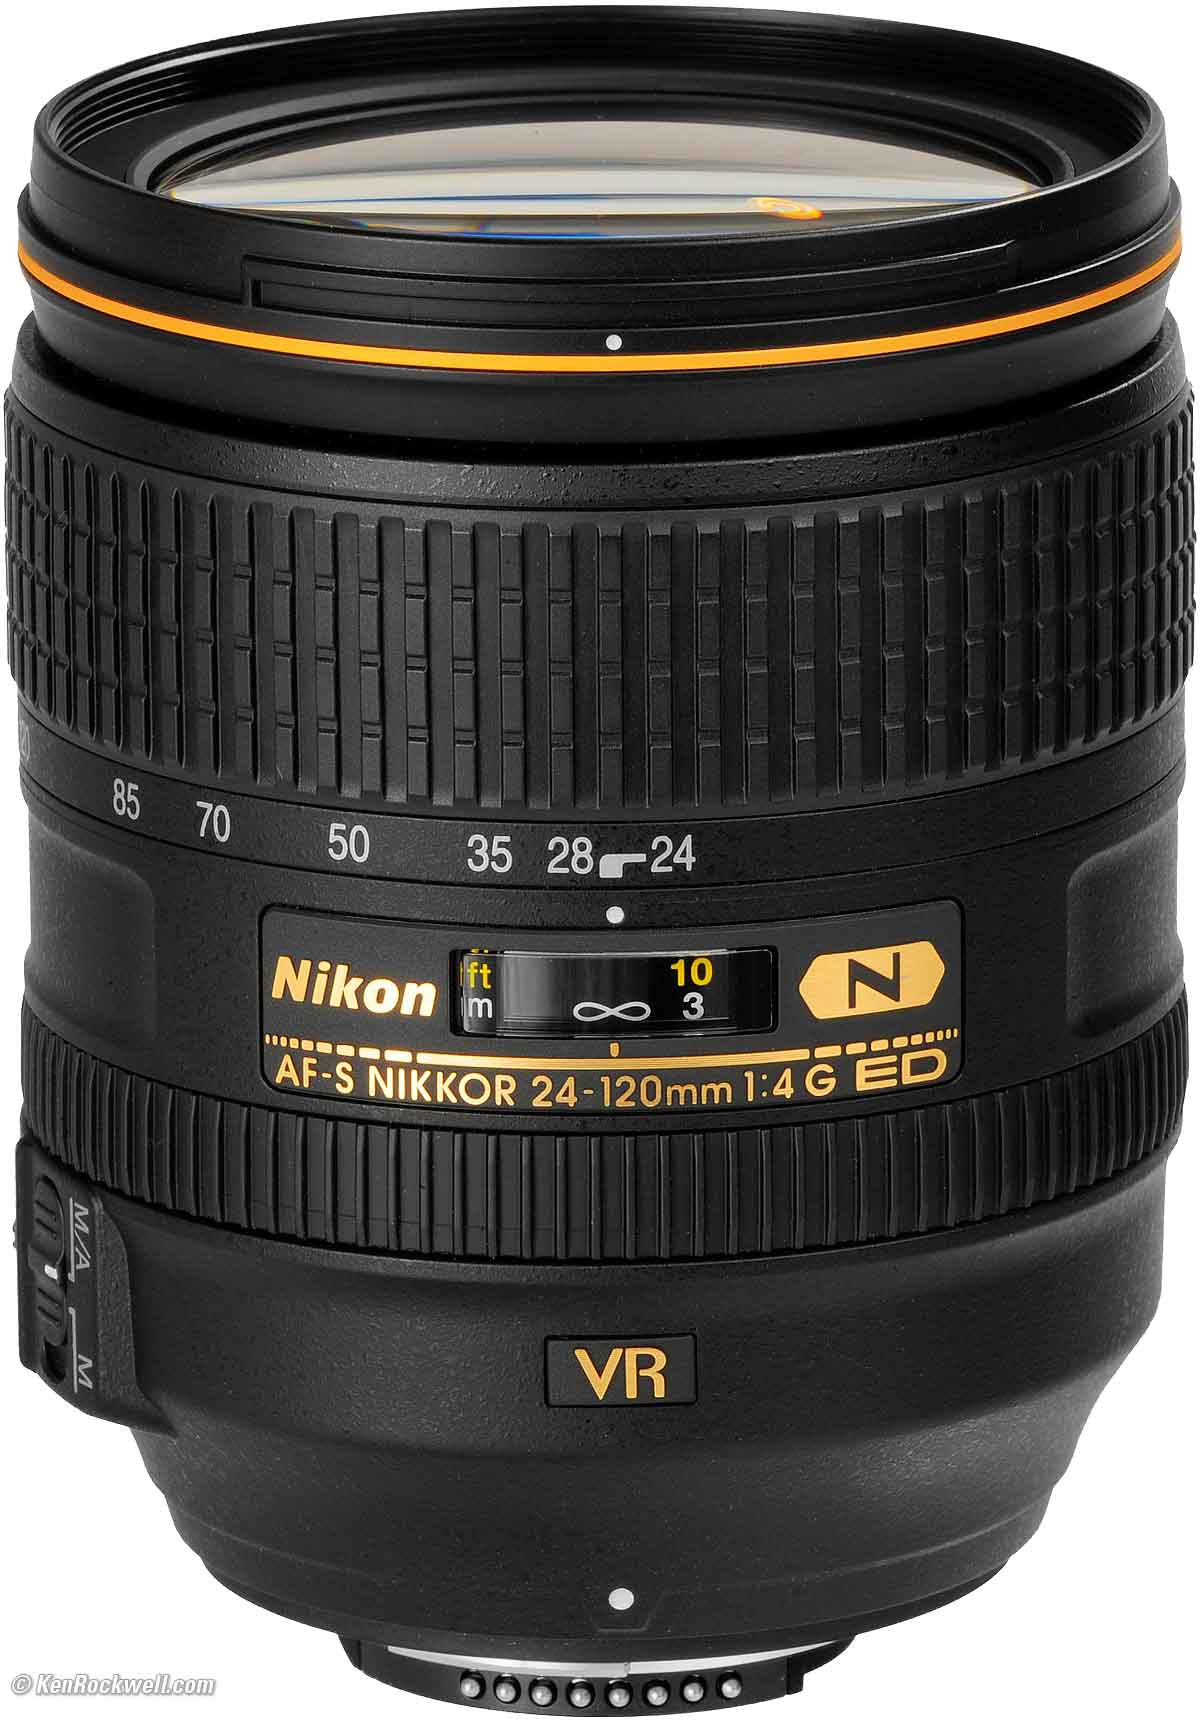 Ultraviolet UV Multi-Coated HD Glass Protection Filter for Nikon AF-S DX Zoom-NIKKOR 55-200mm f/4-5.6G ED Lens 